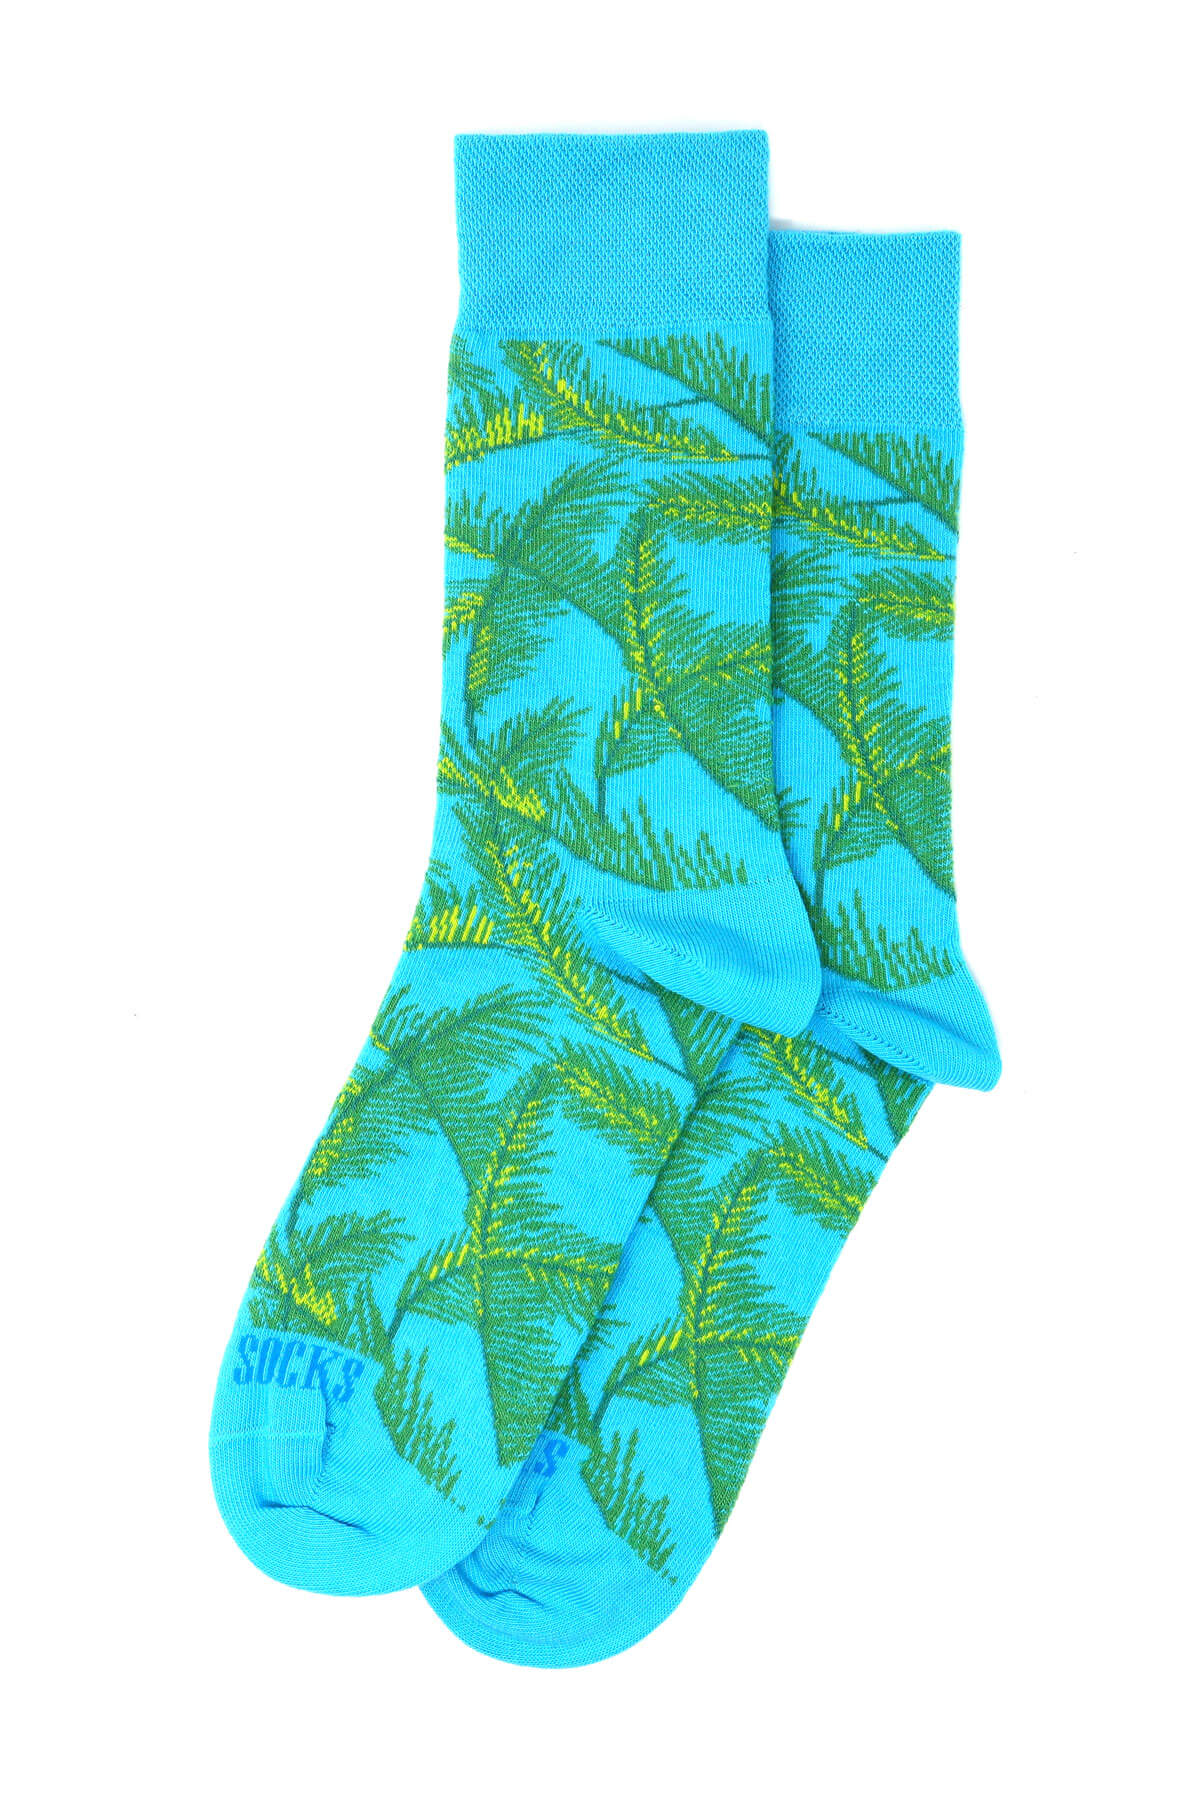 Bombay Sock Company Screamin’ Green Palm Tree Socks